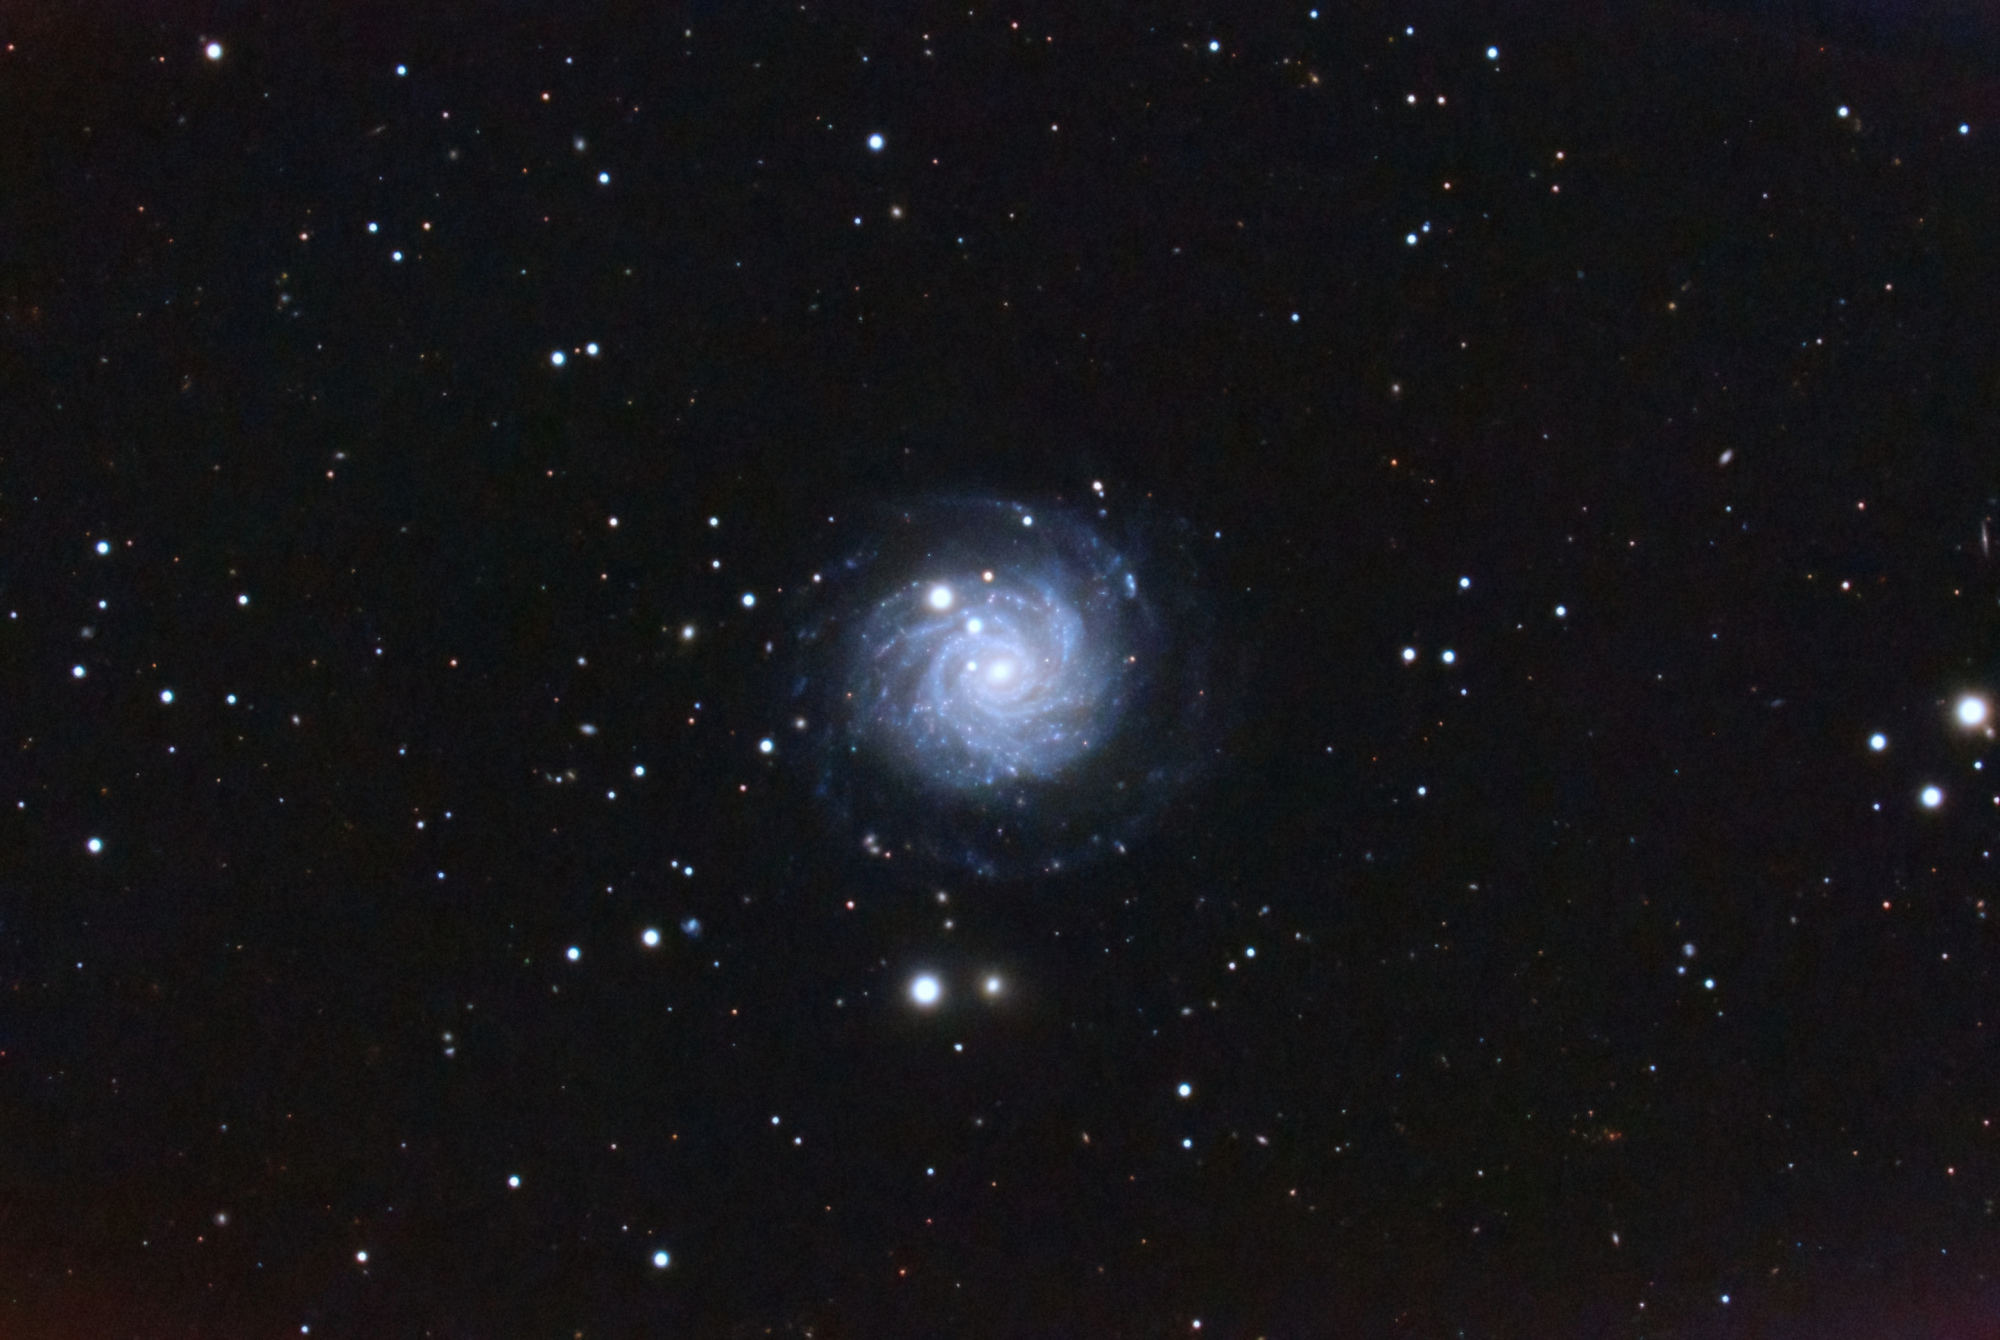 NGC_3344_RGB_Version2-DeNoiseAI-clear.thumb.jpeg.3731a23bcff4f8a40ec38b1f8ca62bb2.jpeg